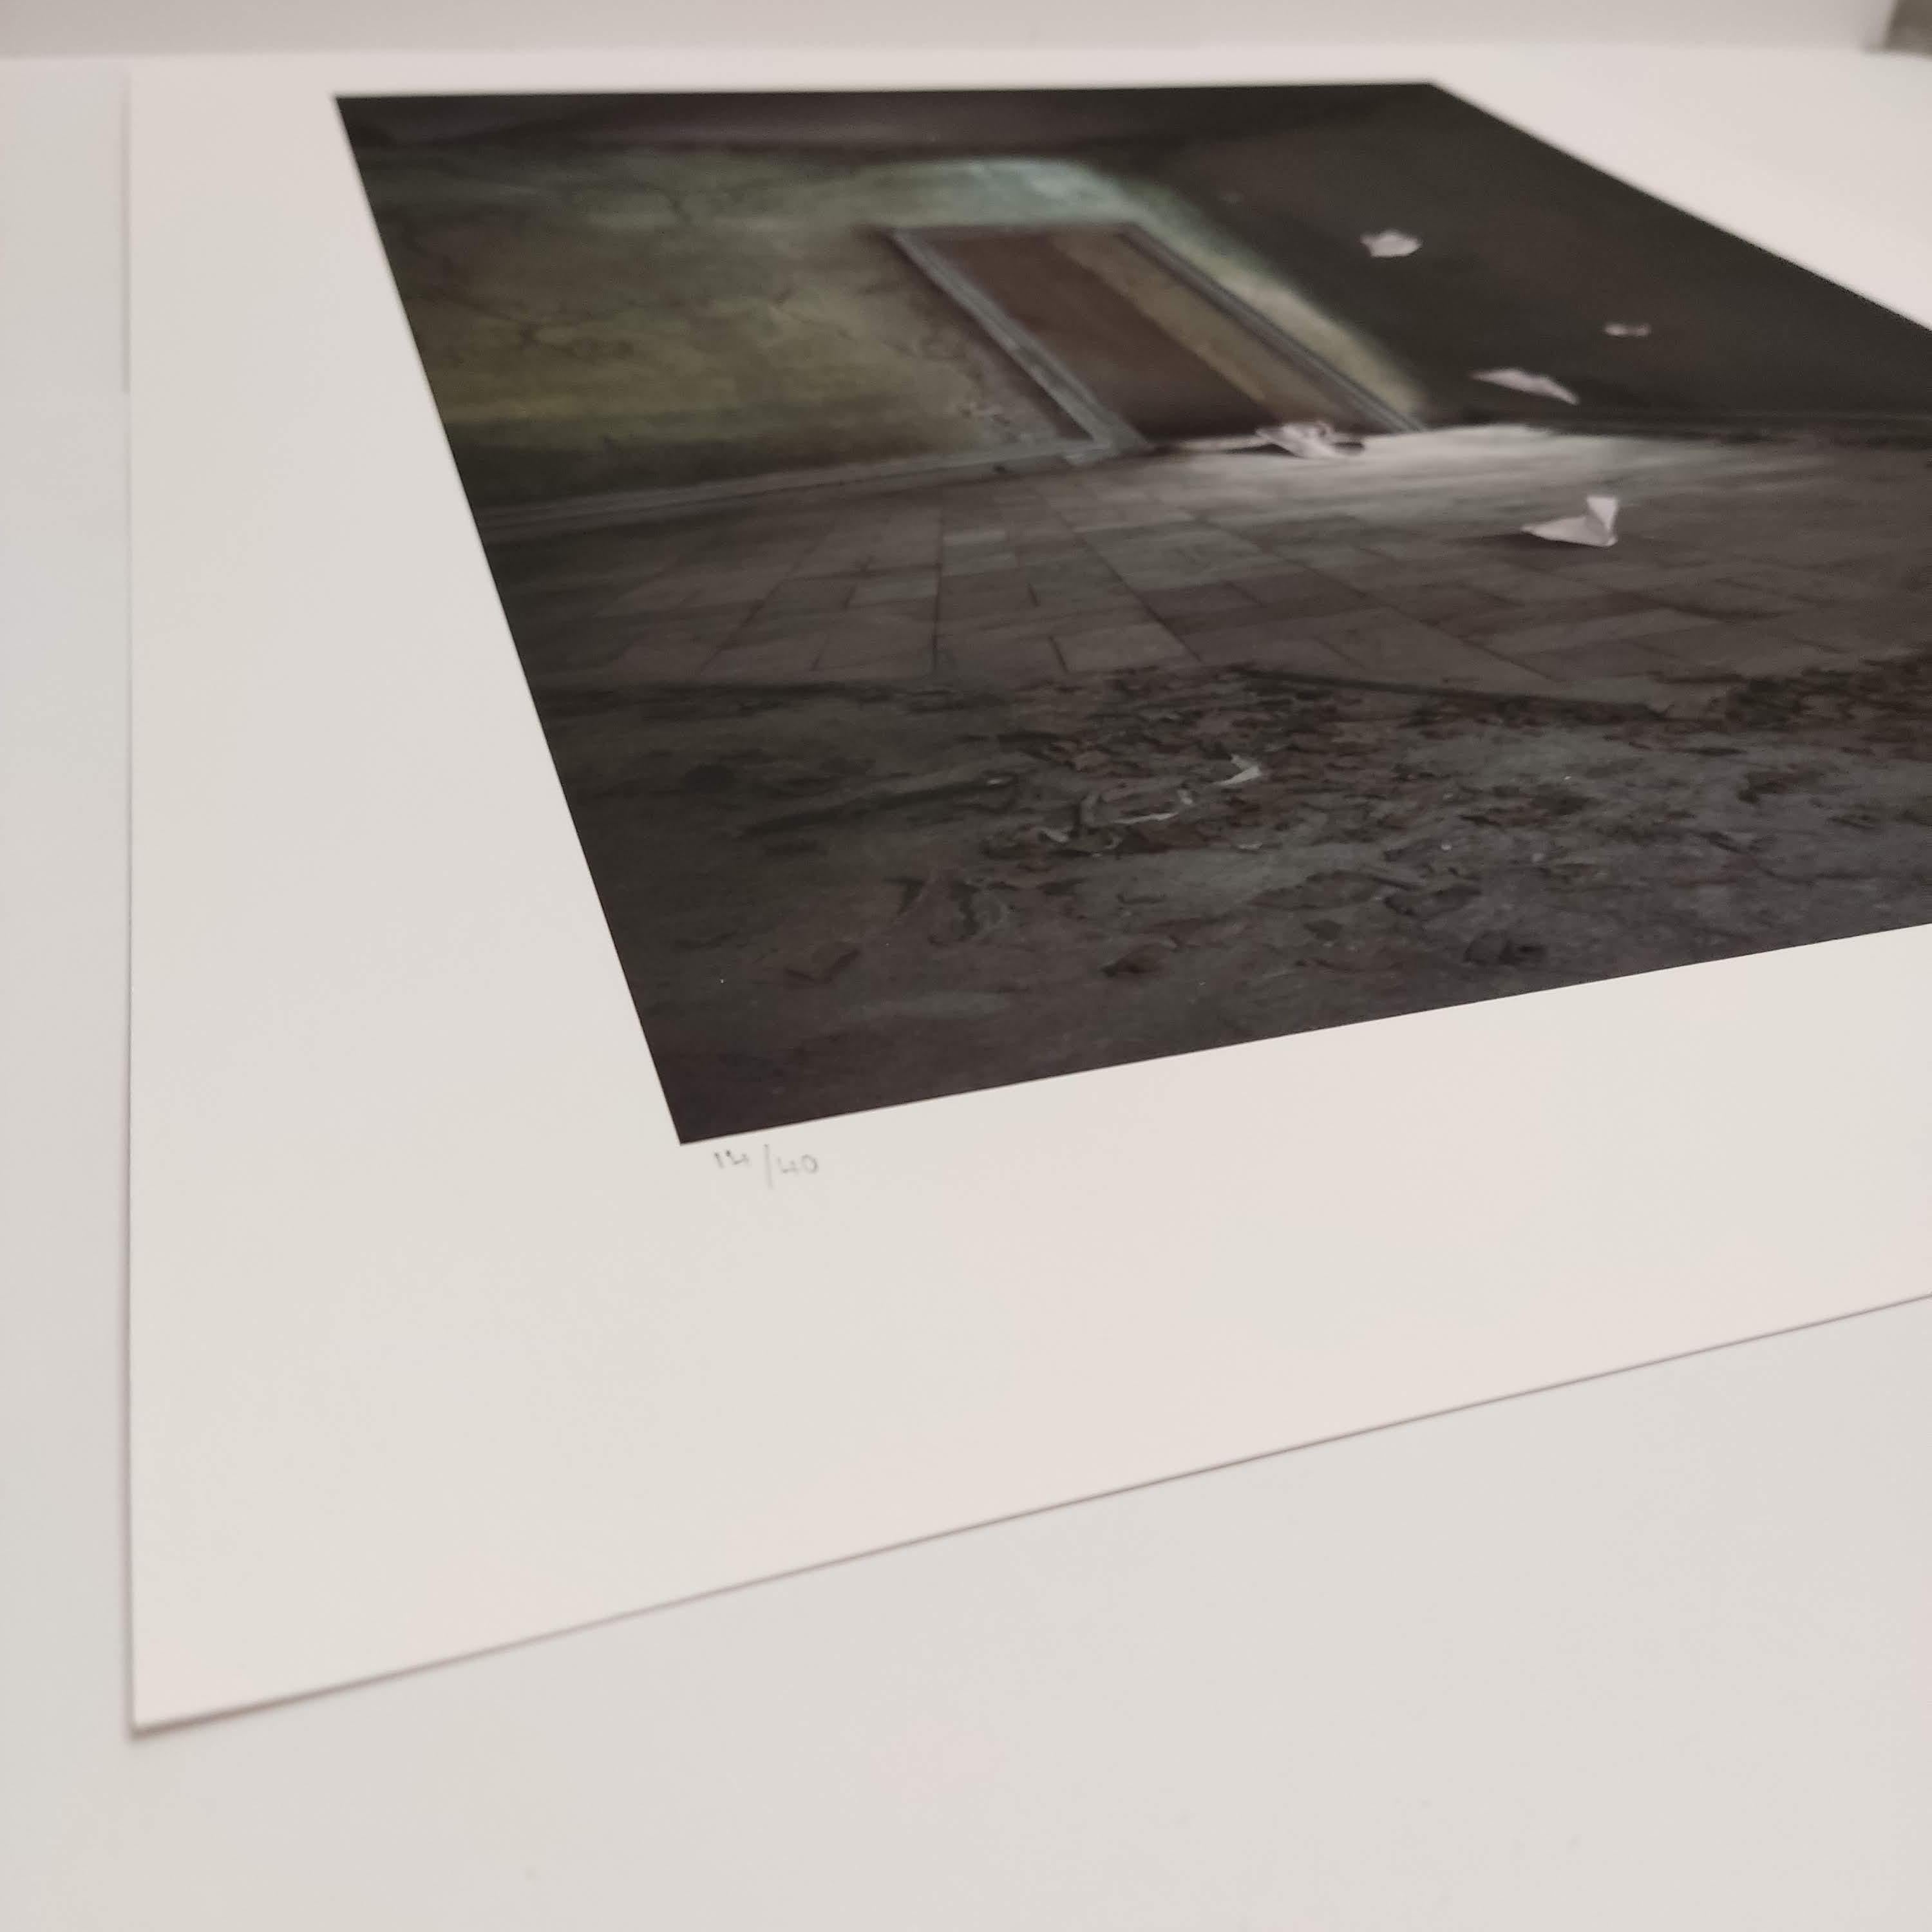 Archivalischer Pigmentdruck auf Hahnemühle Fine Art Paper. Zeitgenössische Fotografie, Fotomontagen, Innenraumfotografie.
Titel der Arbeit: 